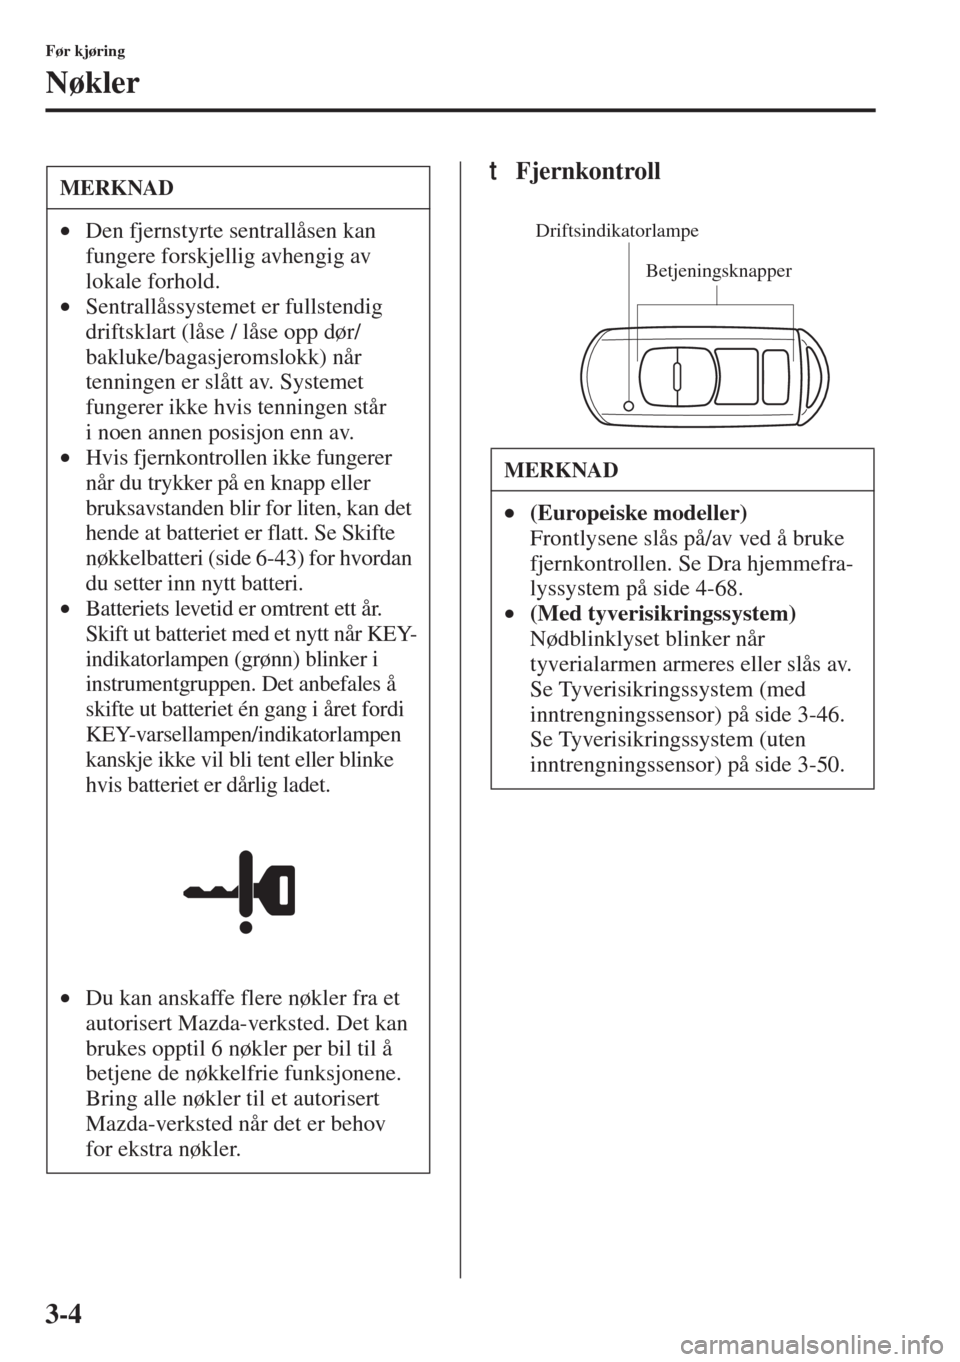 MAZDA MODEL 3 HATCHBACK 2015  Brukerhåndbok (in Norwegian) 3-4
Før kjøring
Nøkler
tFjernkontrollMERKNAD
•Den fjernstyrte sentrallåsen kan 
fungere forskjellig avhengig av 
lokale forhold.
•Sentrallåssystemet er fullstendig 
driftsklart (låse / låse